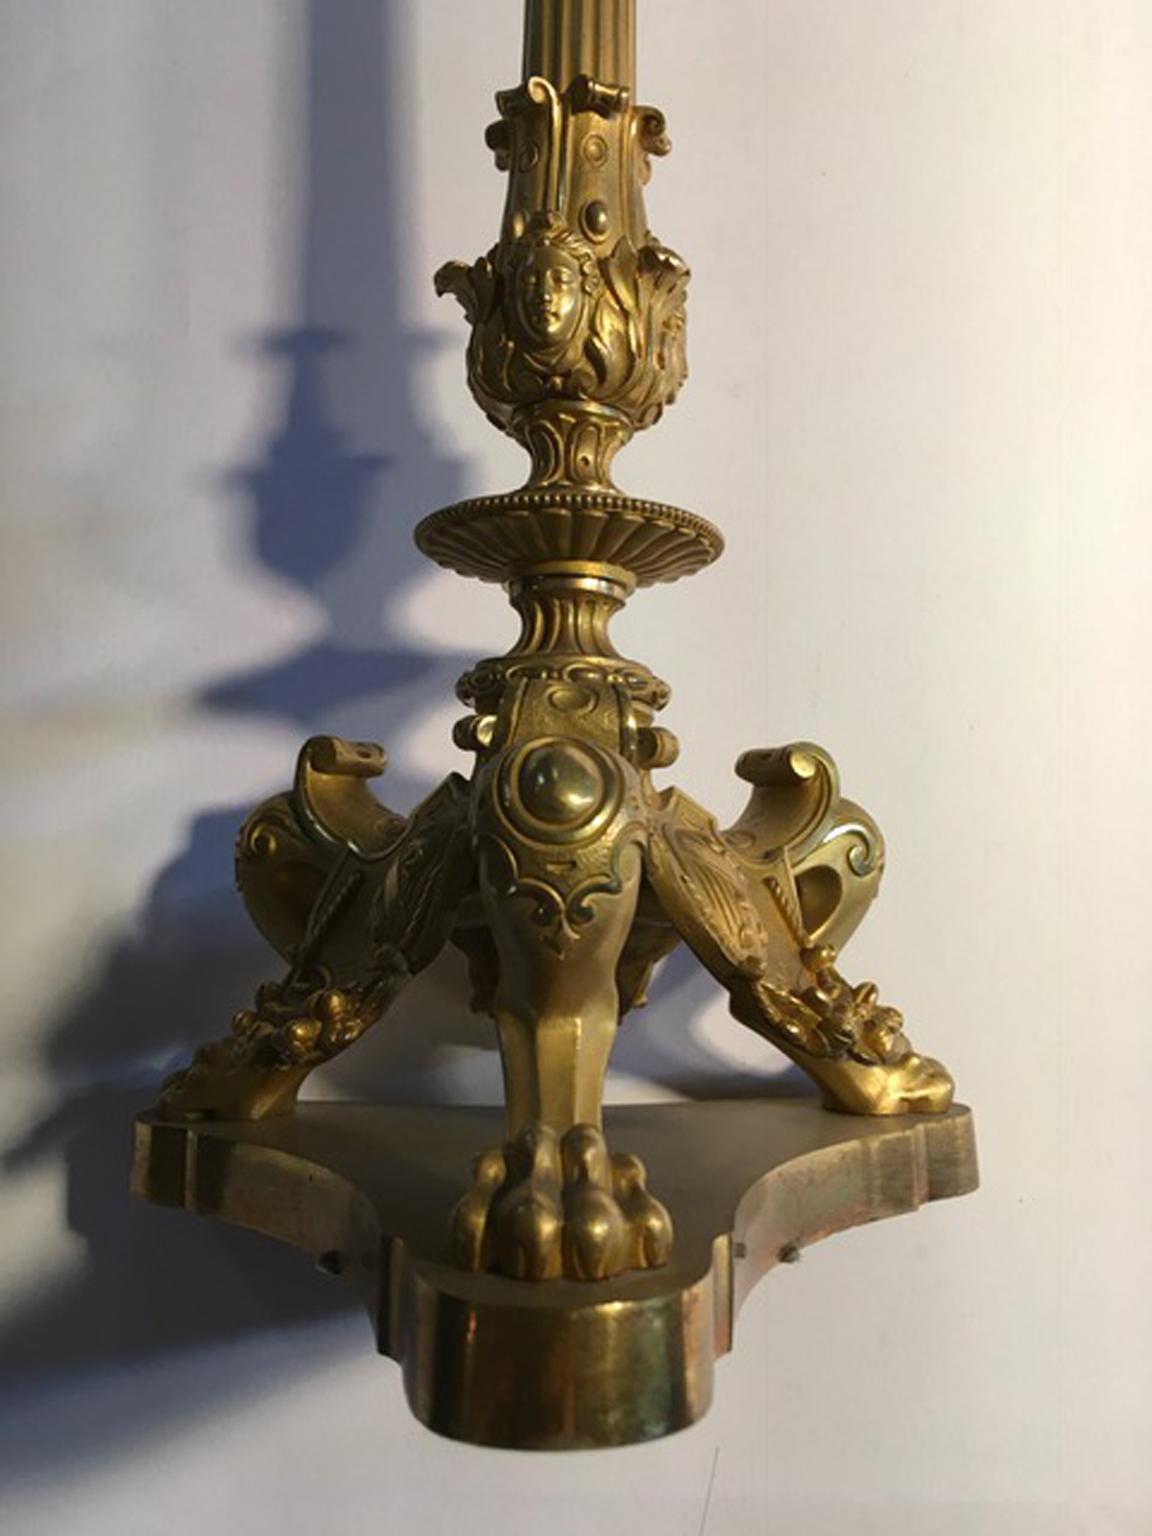 Italien Mitte des 18. Jahrhunderts  Paar Messing Empire fünf Lichter Kerzenhalter oder Tischlampen

Dieses wunderbare Paar Kerzenständer aus Messing ist eine großartige handgefertigte Arbeit eines italienischen Handwerkers aus der Mitte des 18. Das